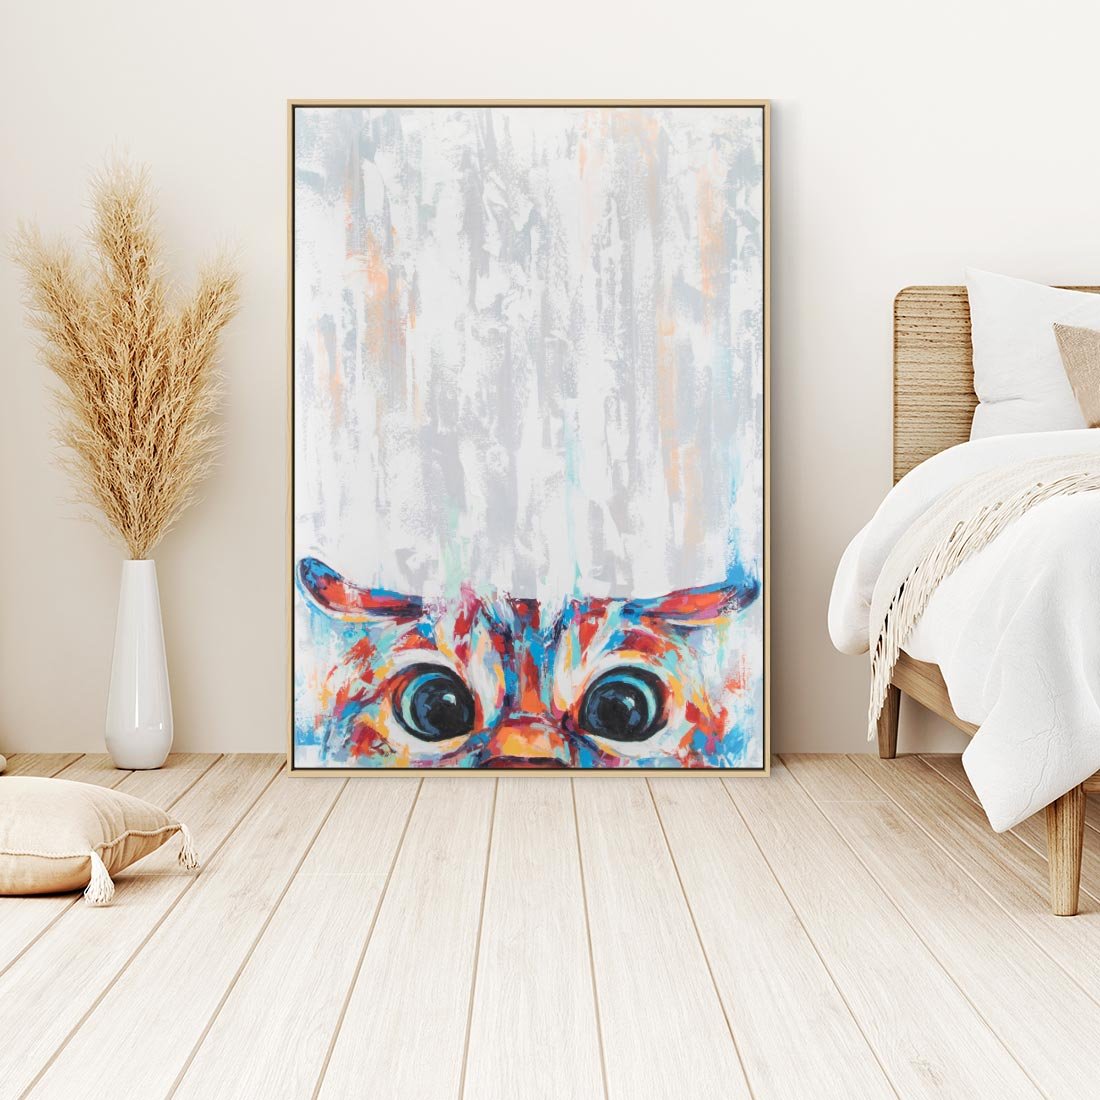 Obraz w ramie 50x70 - Co ja Widzę - obraz olejny, śmieszny obraz kota - rama drewno